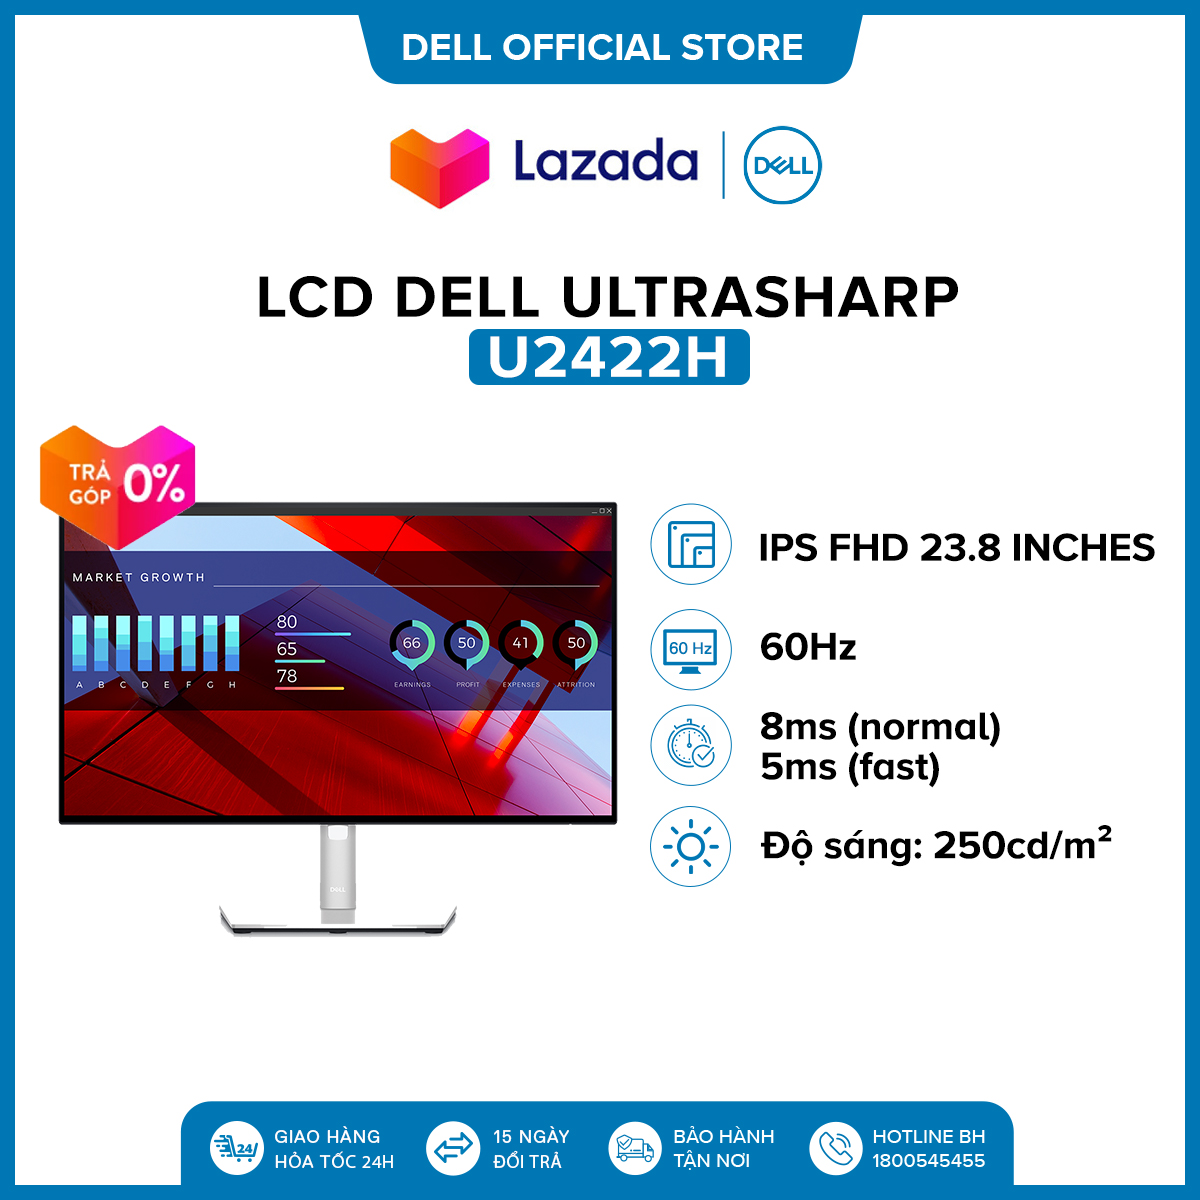 Màn hình máy tính Dell Ultrasharp FHD (1920x1080) 60Hz 8ms 23.8 inches l U2422H l HÀNG CHÍNH HÃNG